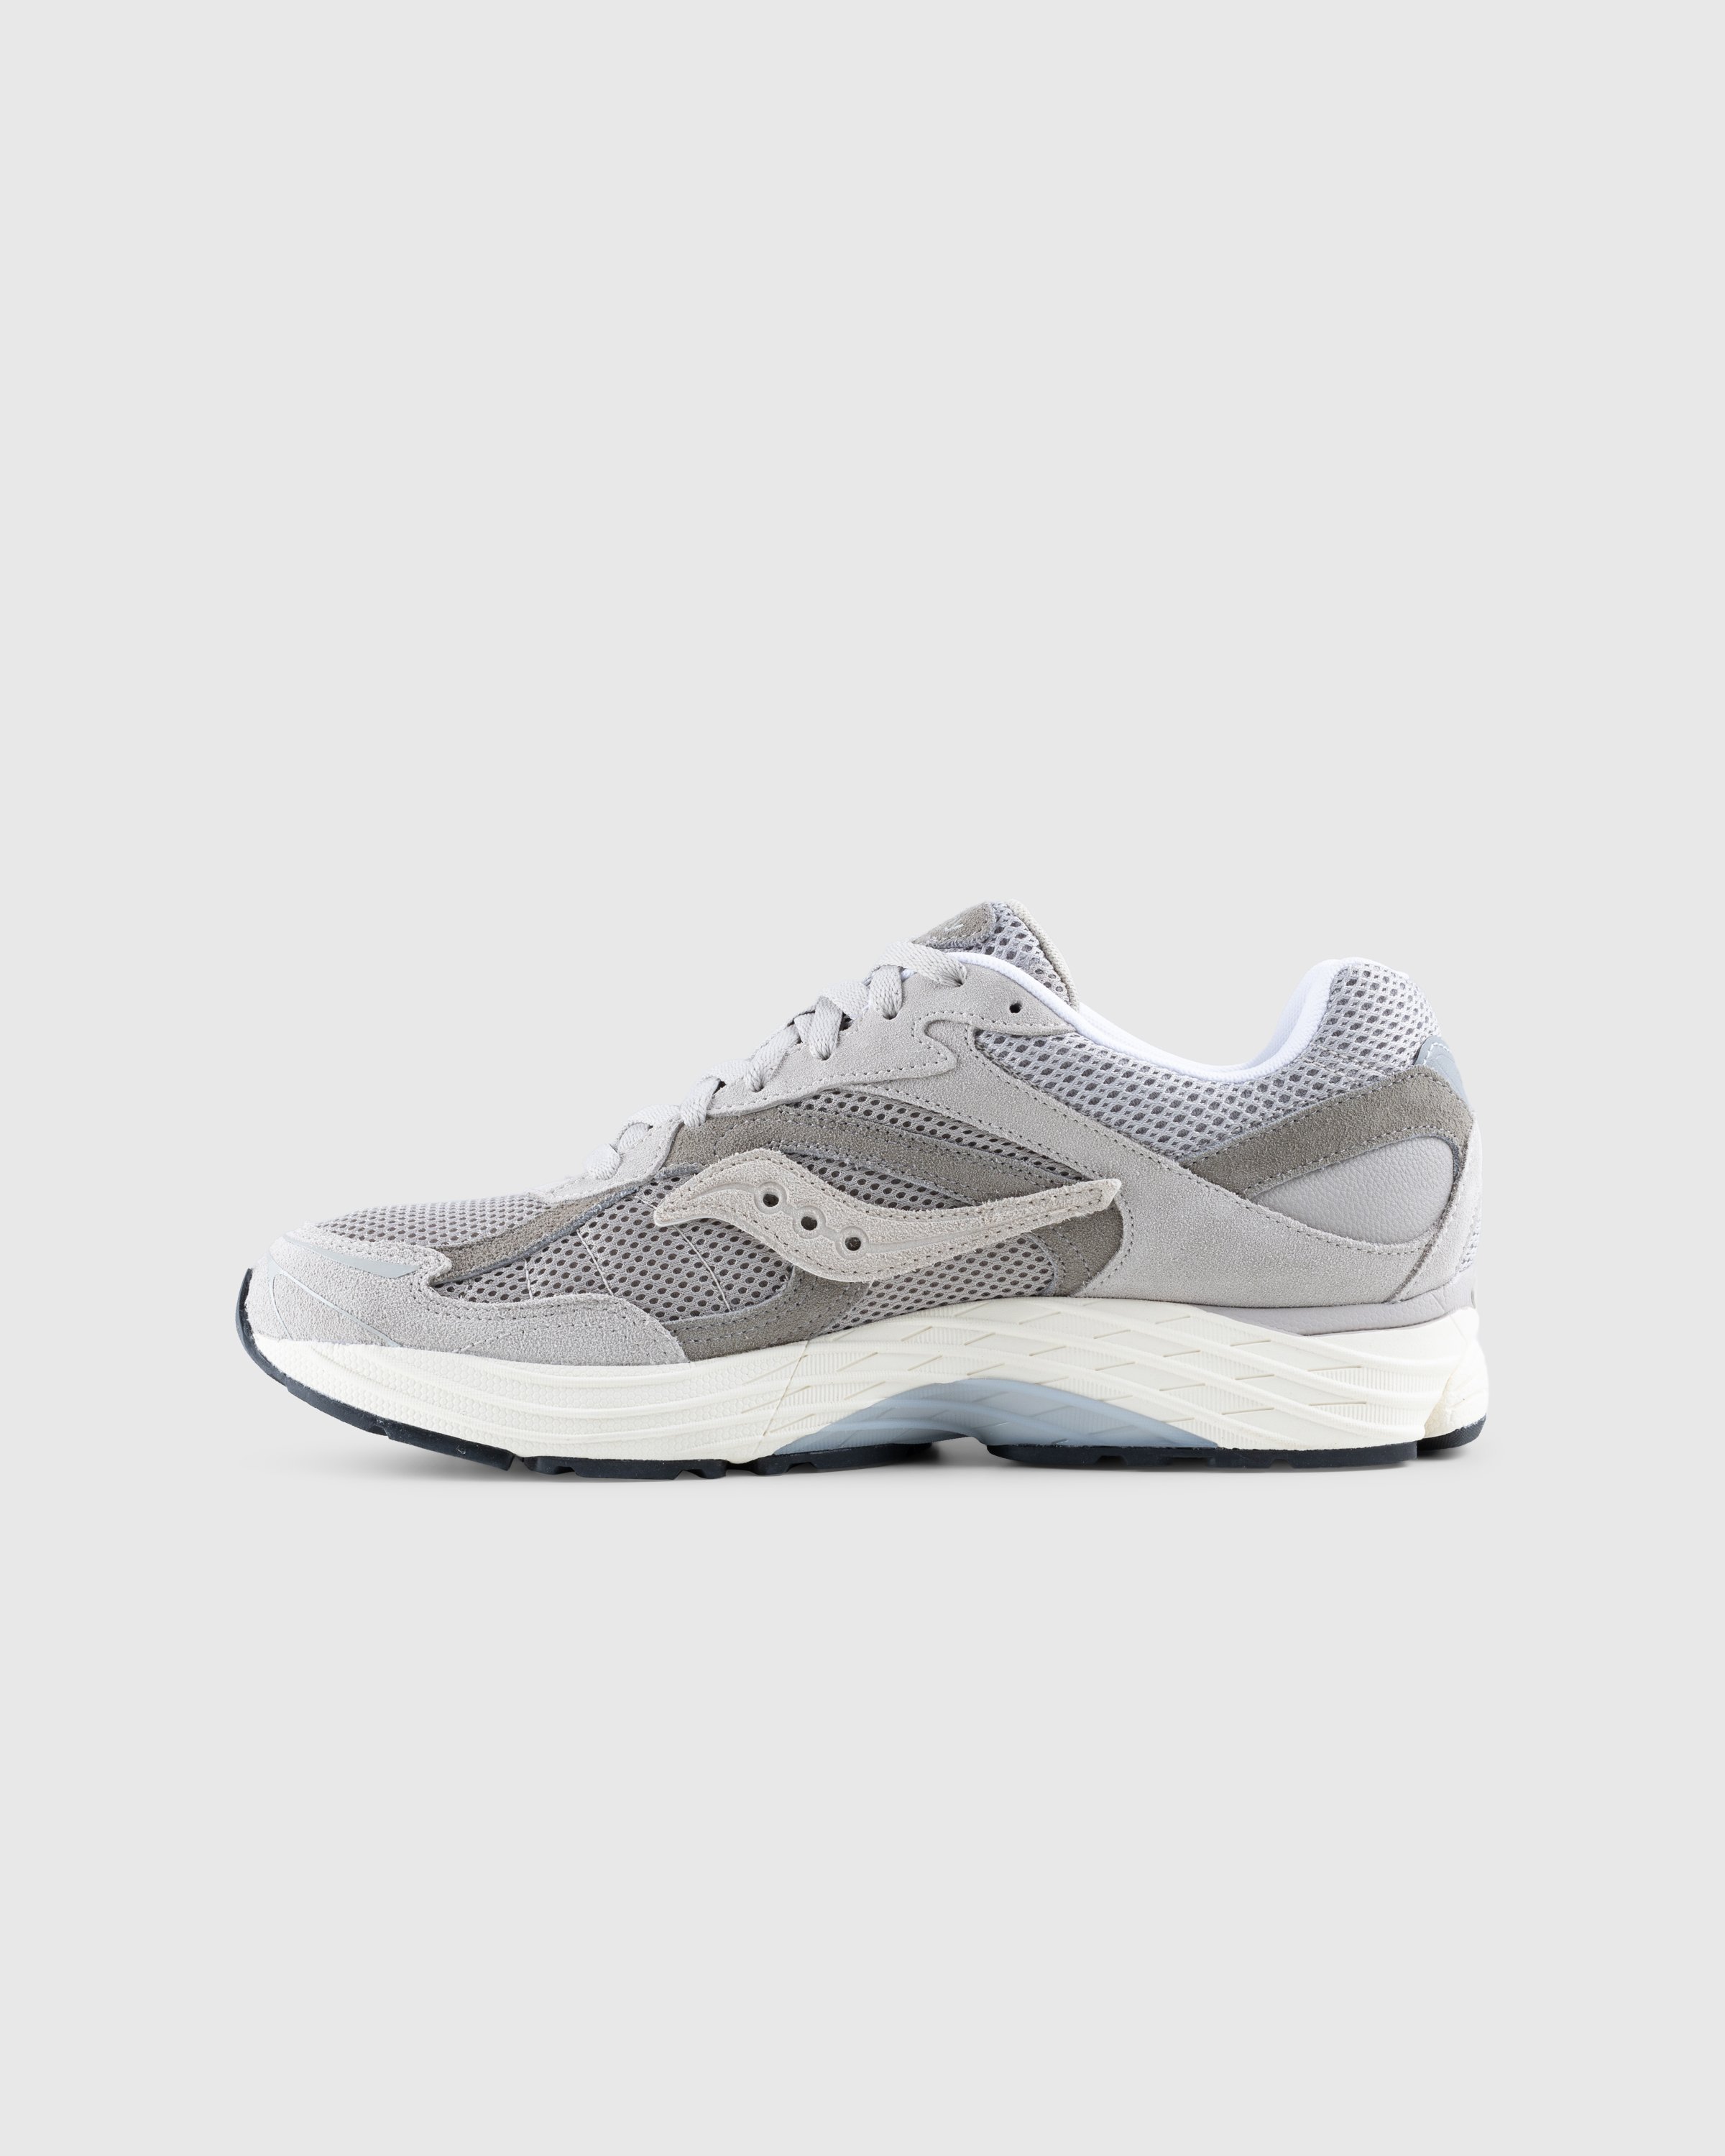 Saucony - ProGrid Omni 9 Gray - Footwear - Grey - Image 2